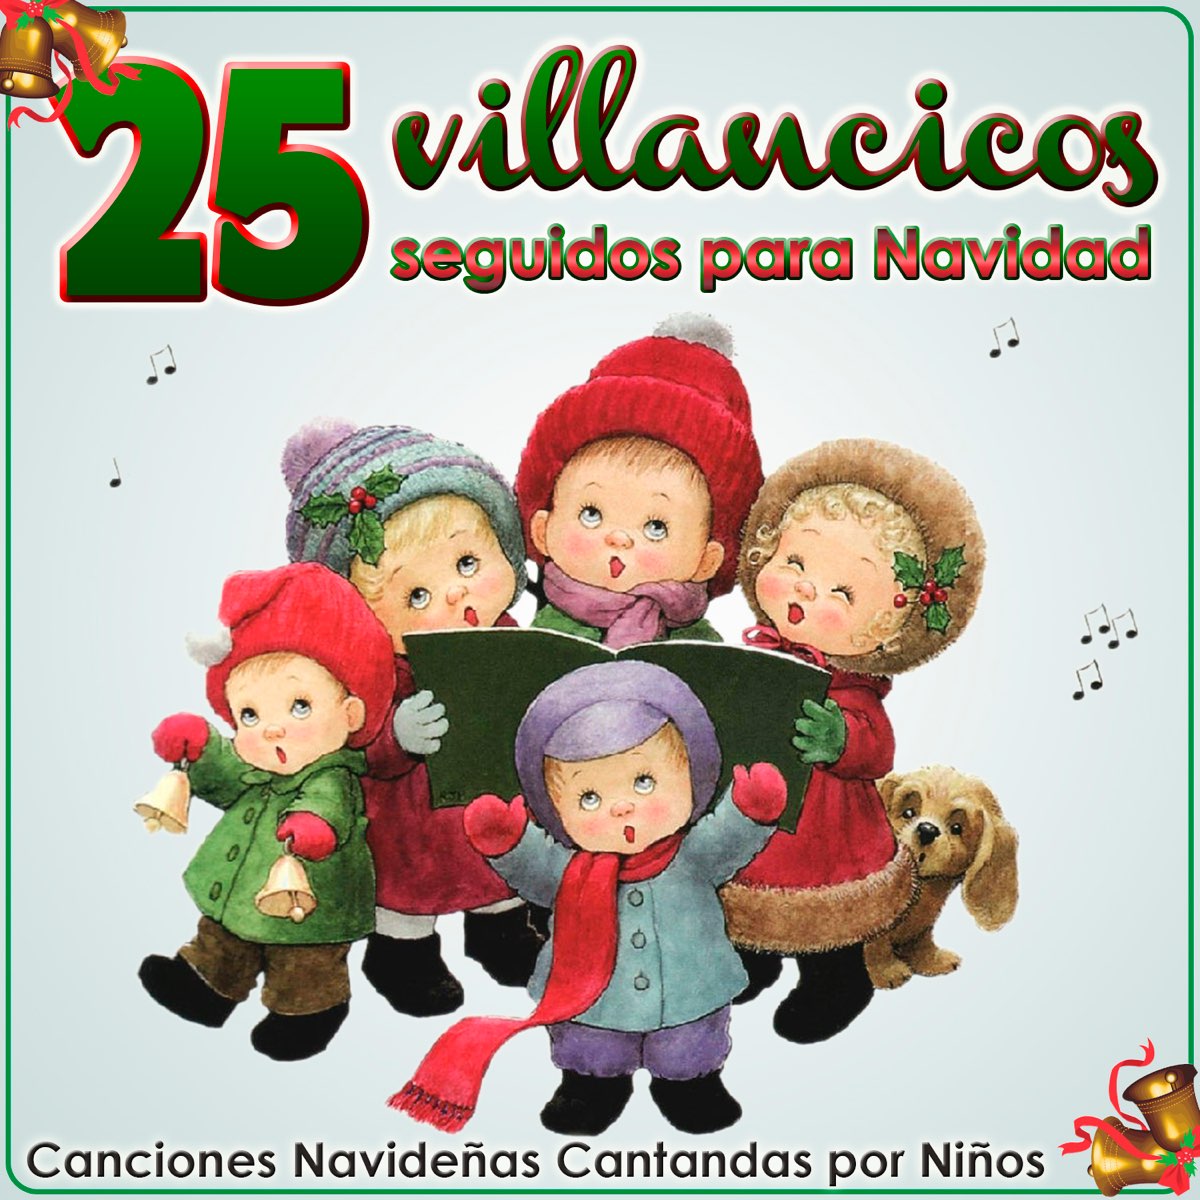 25 Villancicos Seguidos para Navidad (Canciones Navideñas Cantadas por  Niños) by Grupo Infantil Quita y Pon on Apple Music